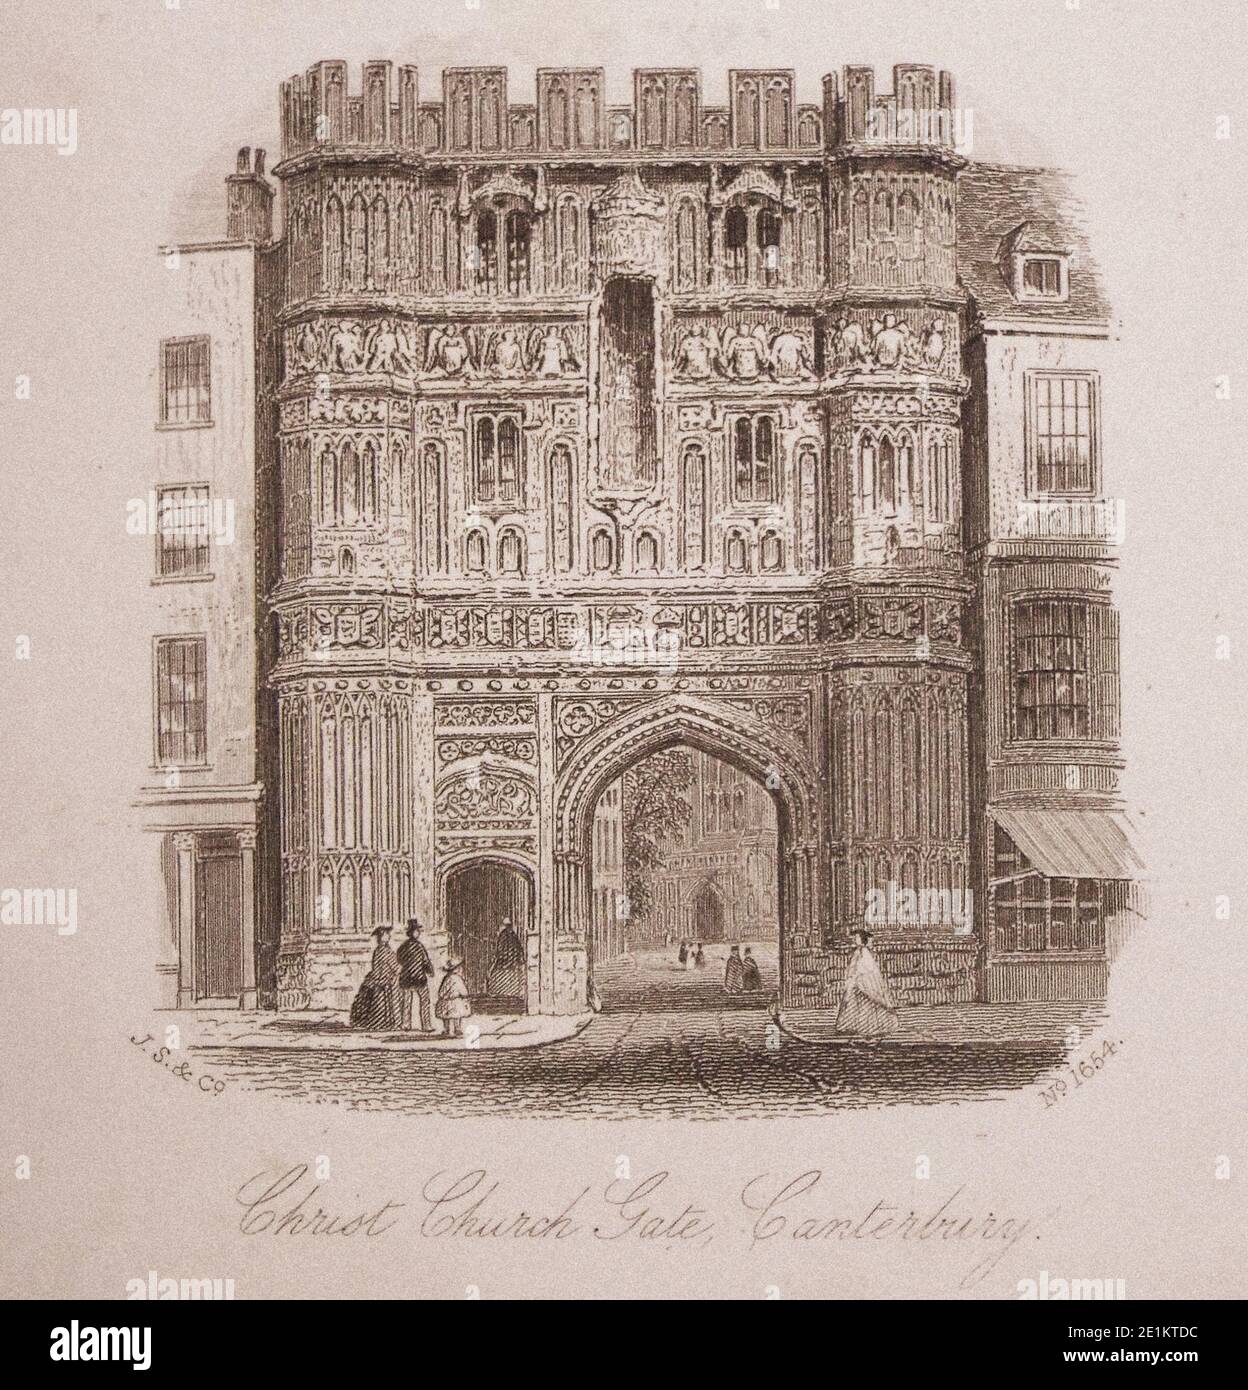 Gravure ancienne de la porte de Christ Church. Canterbury, Angleterre. Le 19e siècle Banque D'Images